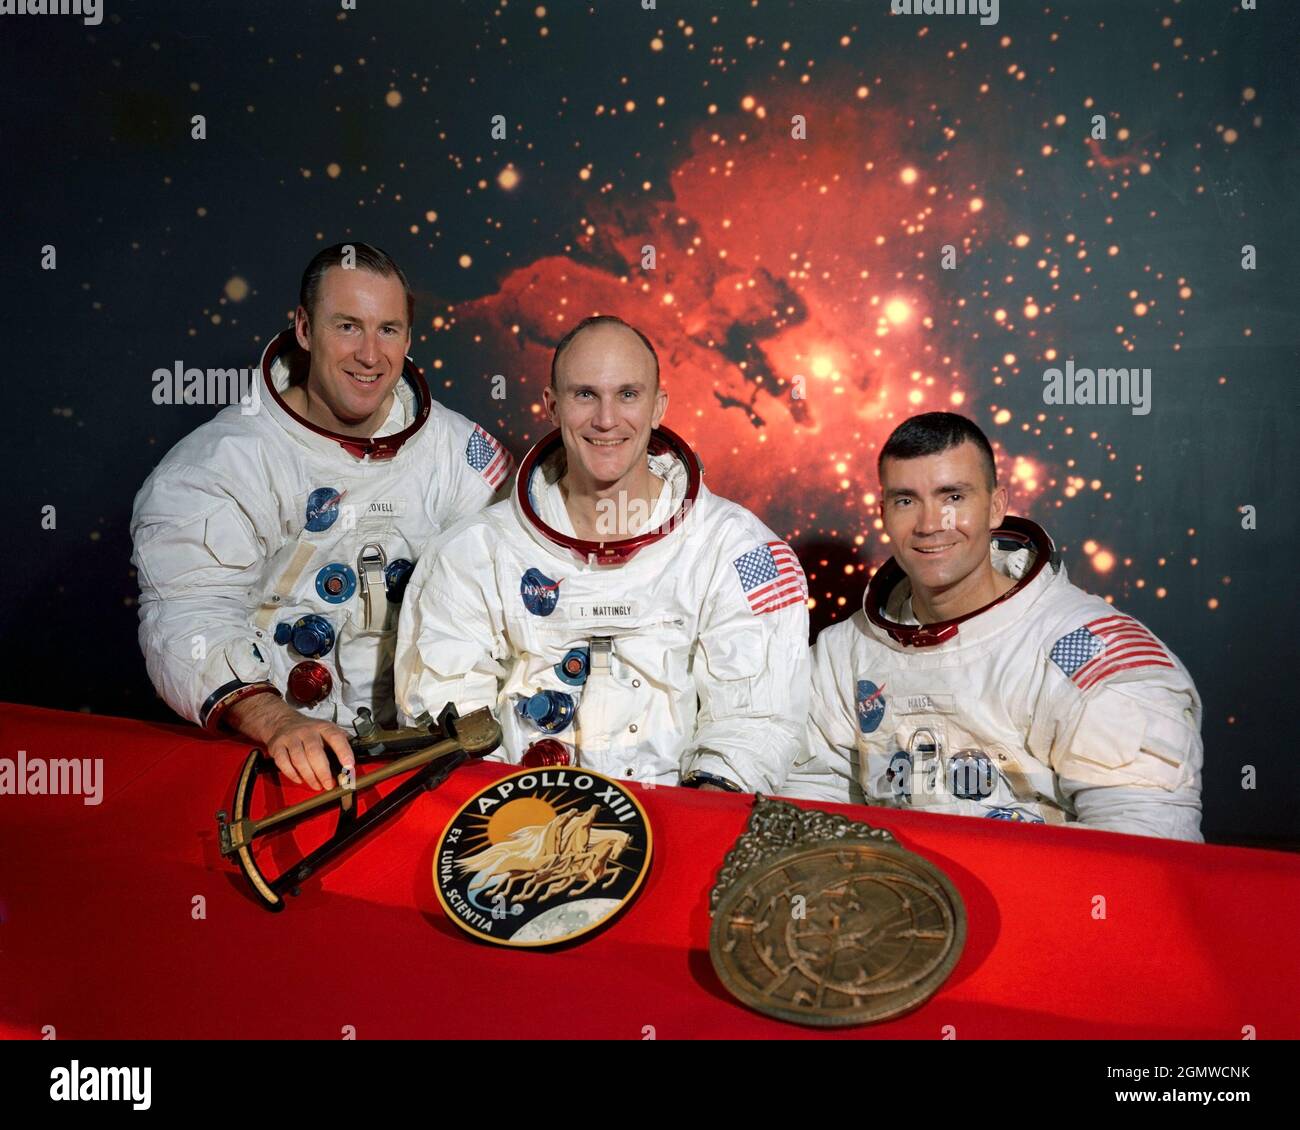 (Dicembre 1969) --- i membri del primo equipaggio della missione di atterraggio lunare Apollo 13 (da sinistra a destra) sono gli astronauti James A. Lovell Jr., comandante; Thomas K. Mattingly II, pilota del modulo di comando; e Fred W. Haise Jr., pilota del modulo lunare. Sono seduti di fronte ad una scena della Nebula Laguna, con le insegne della missione e due elementi di navigazione precoce in primo piano. Nell'emblema Apollo 13 (centro) è rappresentato Apollo, il dio del sole della mitologia greca, che simboleggia che i voli Apollo hanno esteso la luce della conoscenza a tutta l'umanità. La frase latina ex Luna, Scientia significa 'fra Foto Stock